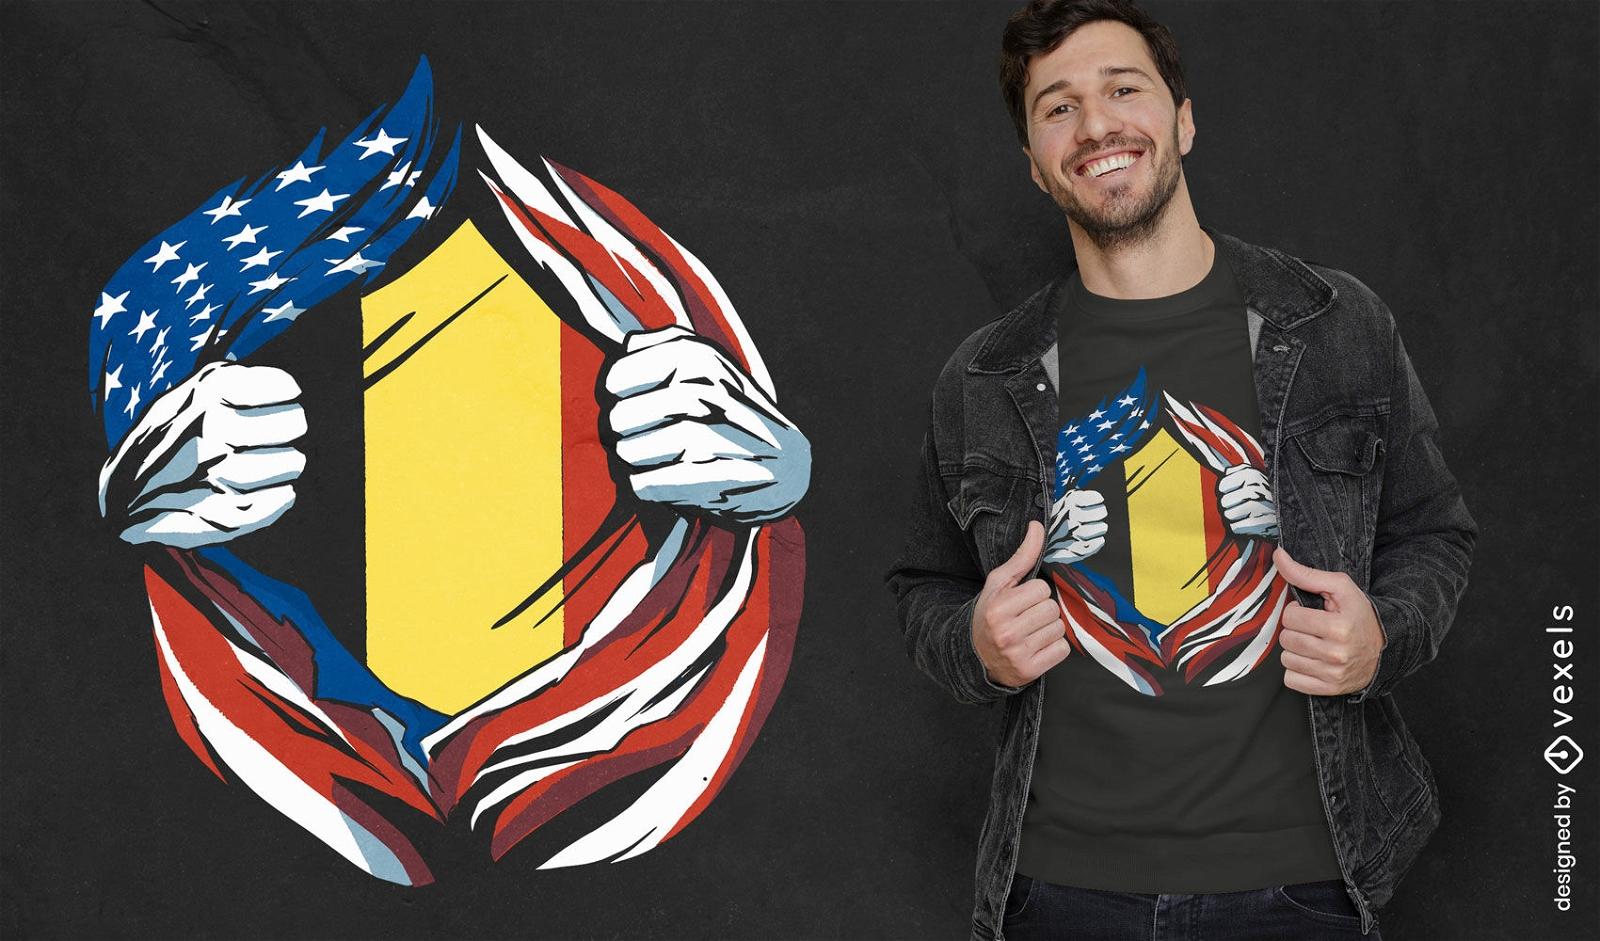 Diseño de camiseta con bandera de Estados Unidos y Bélgica.